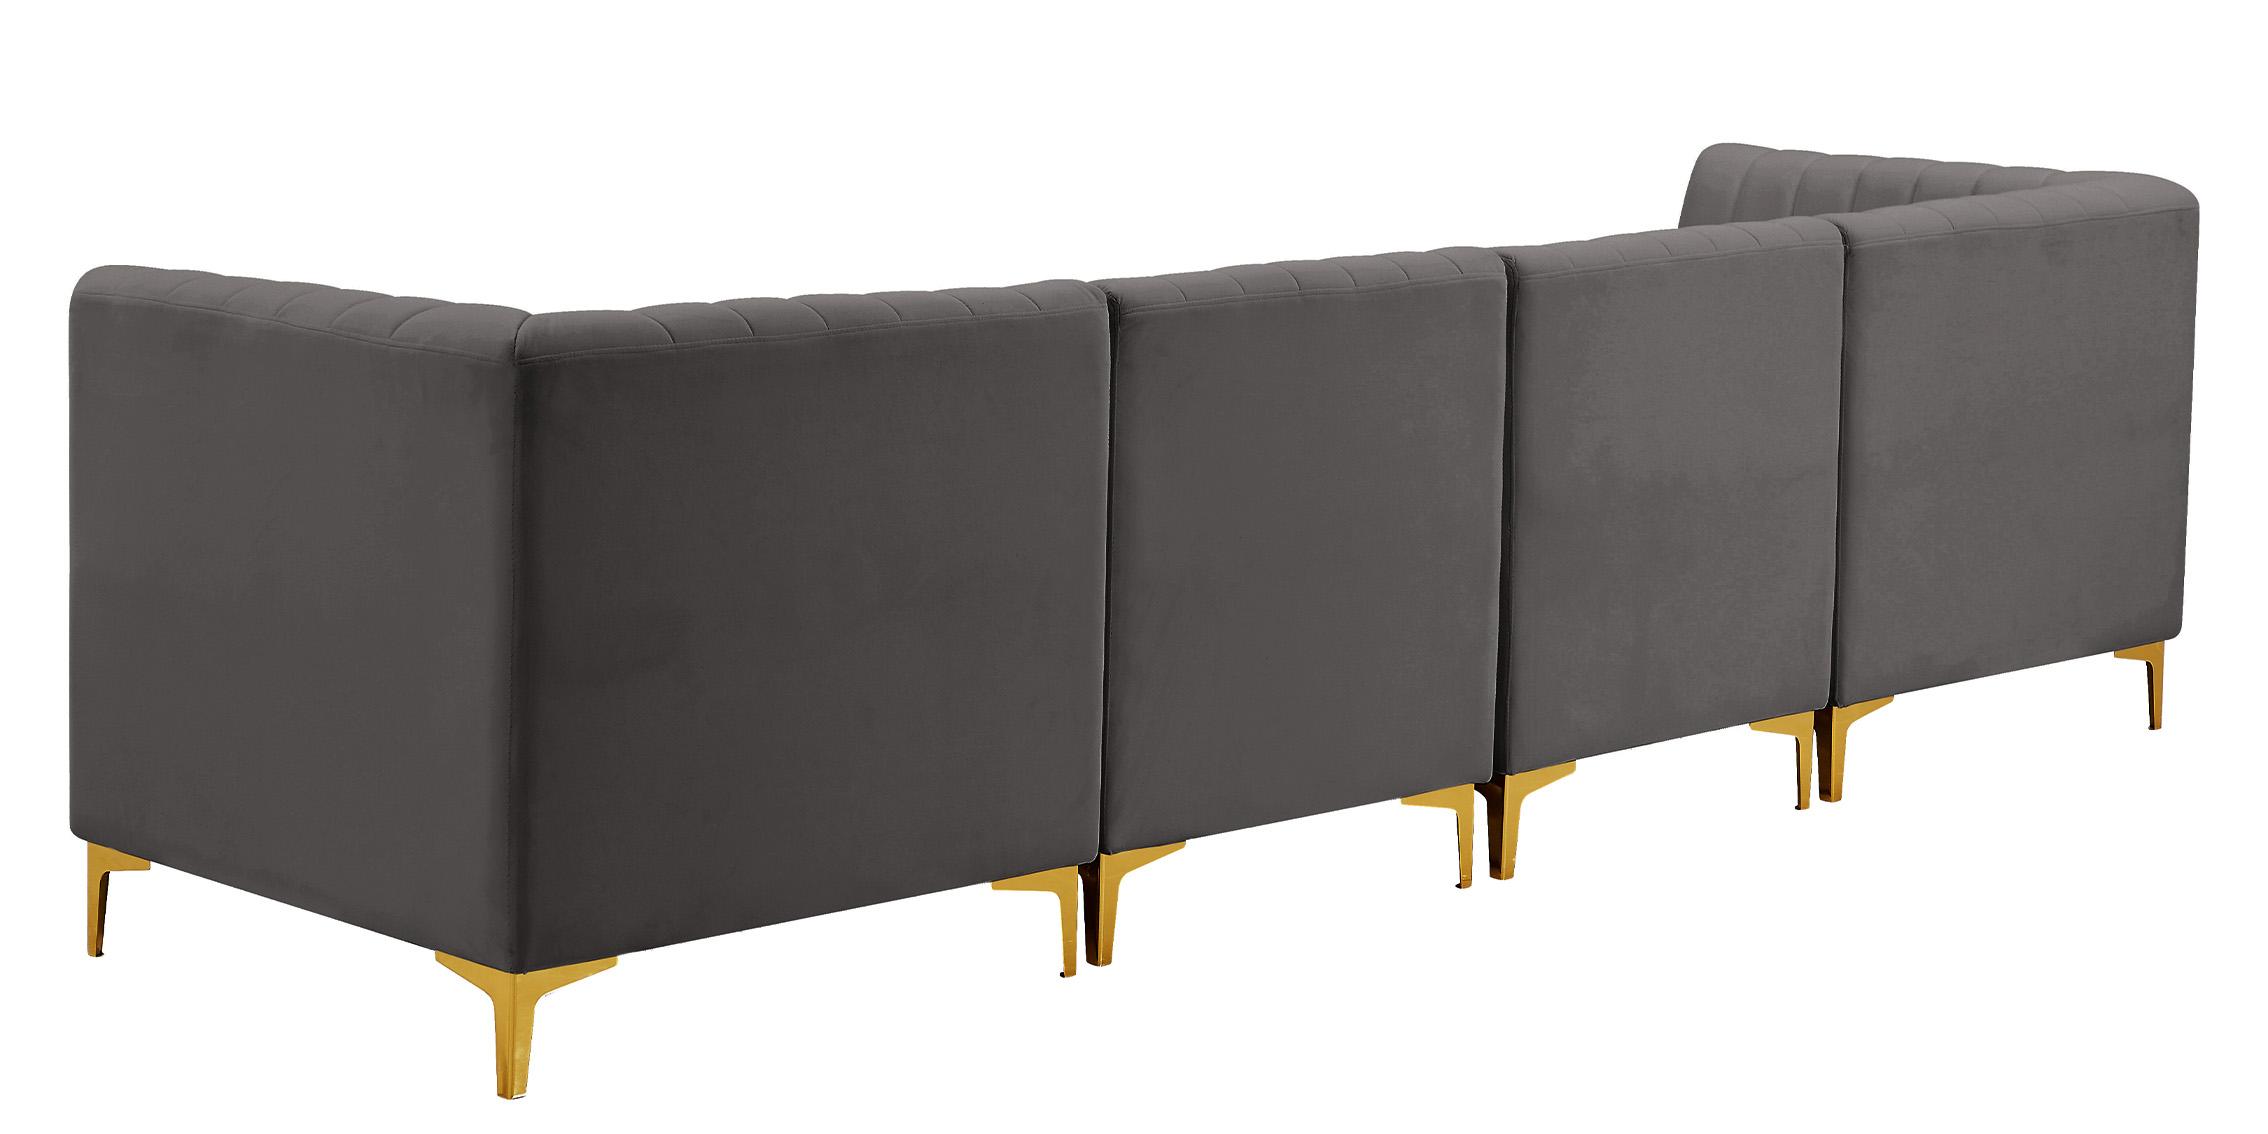 

    
604Grey-S119 Meridian Furniture Modular Sectional Sofa
